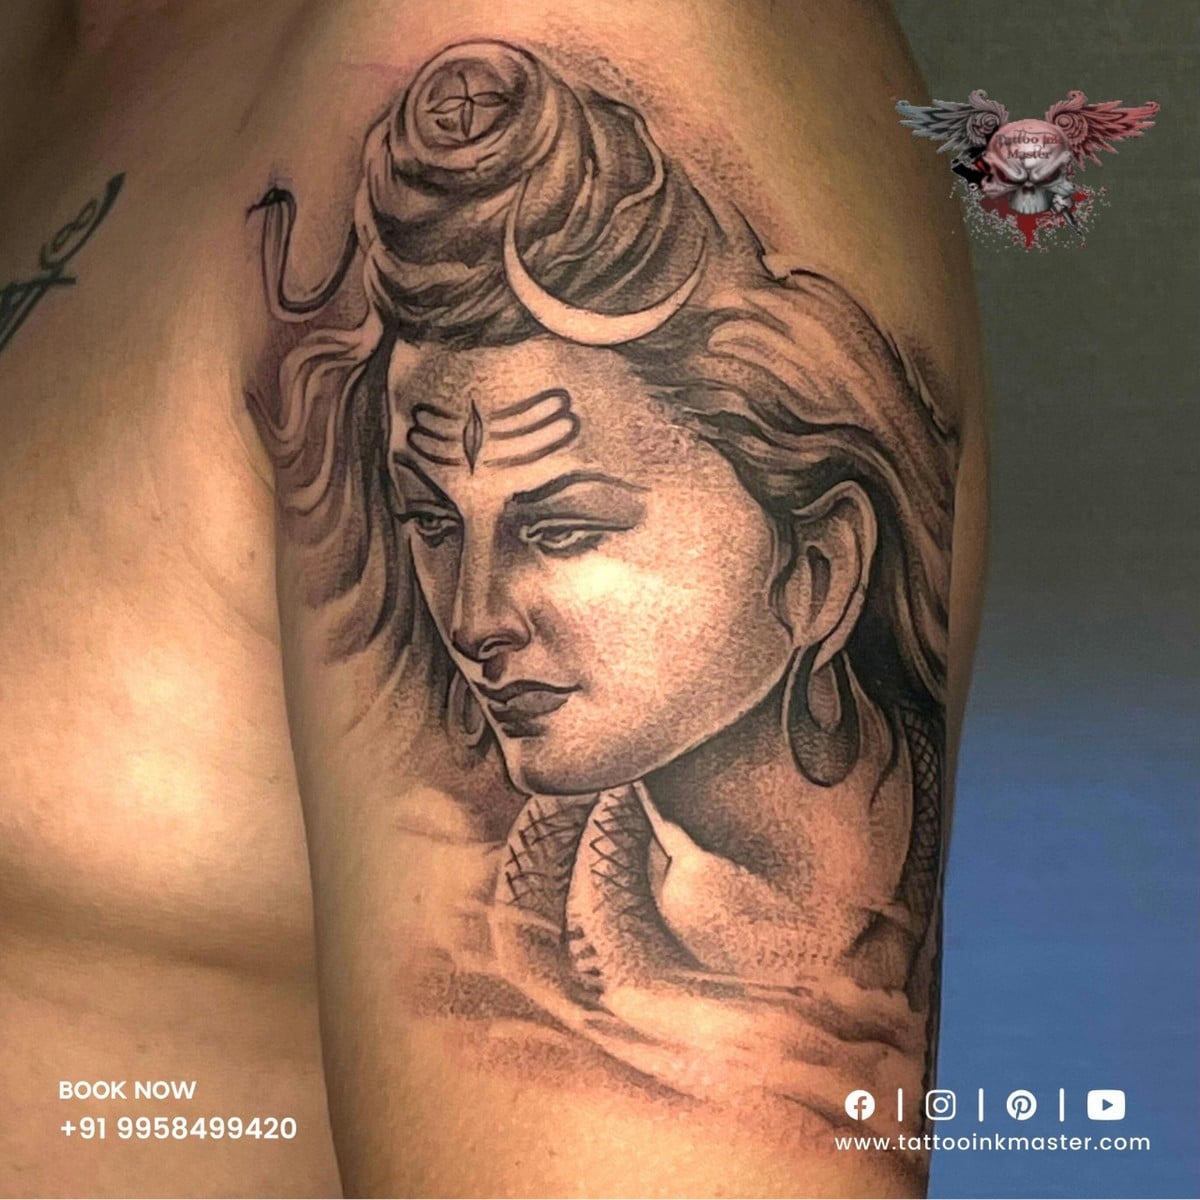 Spiritual Lord Shiva tattoo | Tattoo Ink Master